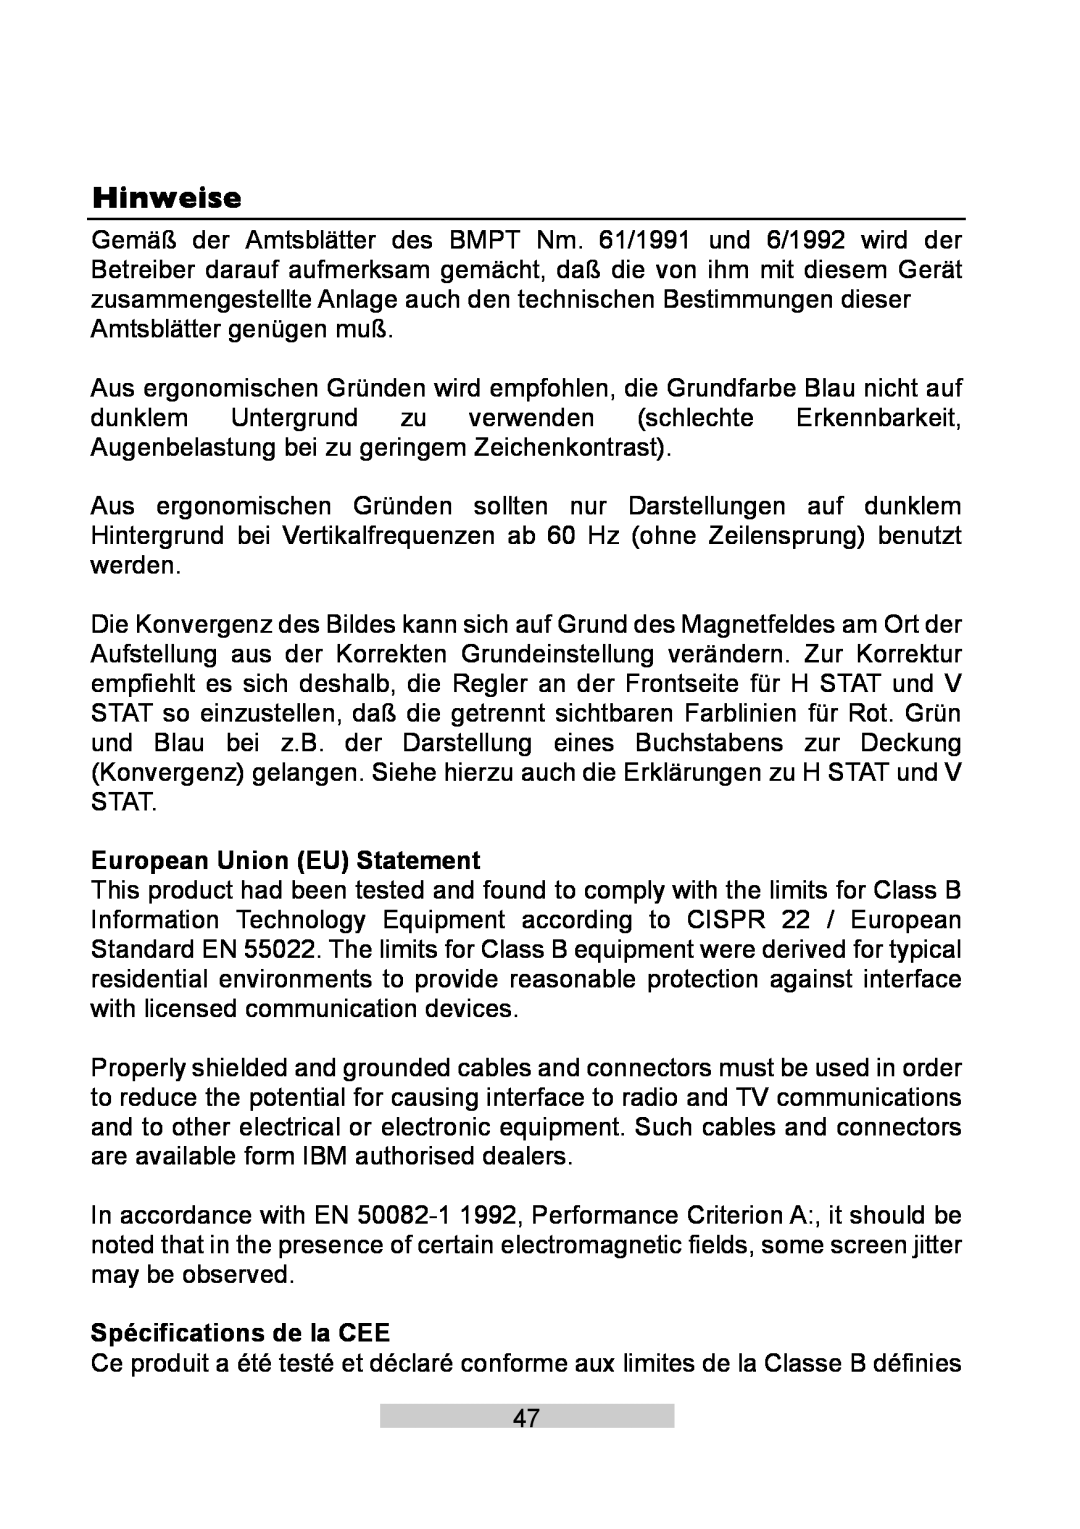 IBM T86A system manual Hinweise, European Union EU Statement, Spécifications de la CEE 